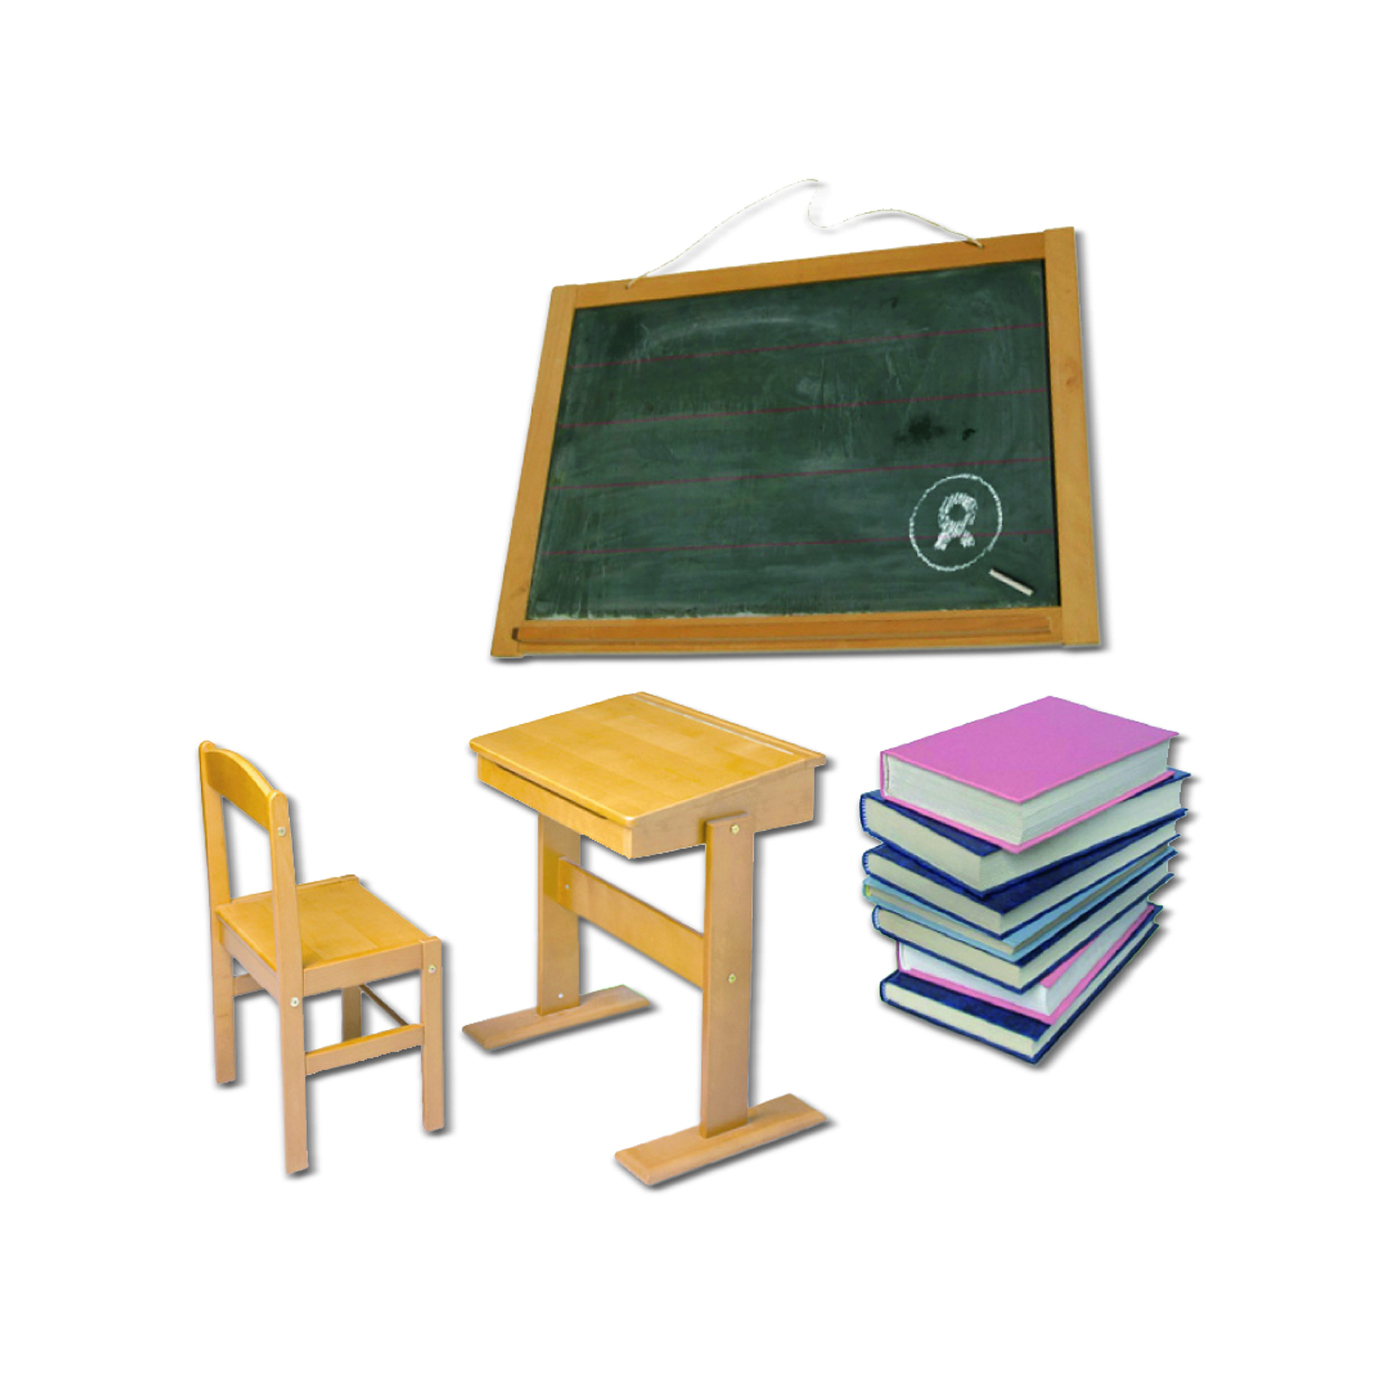 Beispiel Geschenk Spende Klassenzimmer: Grafik mit Tisch, Stuhl, Tafel und Schulbüchern